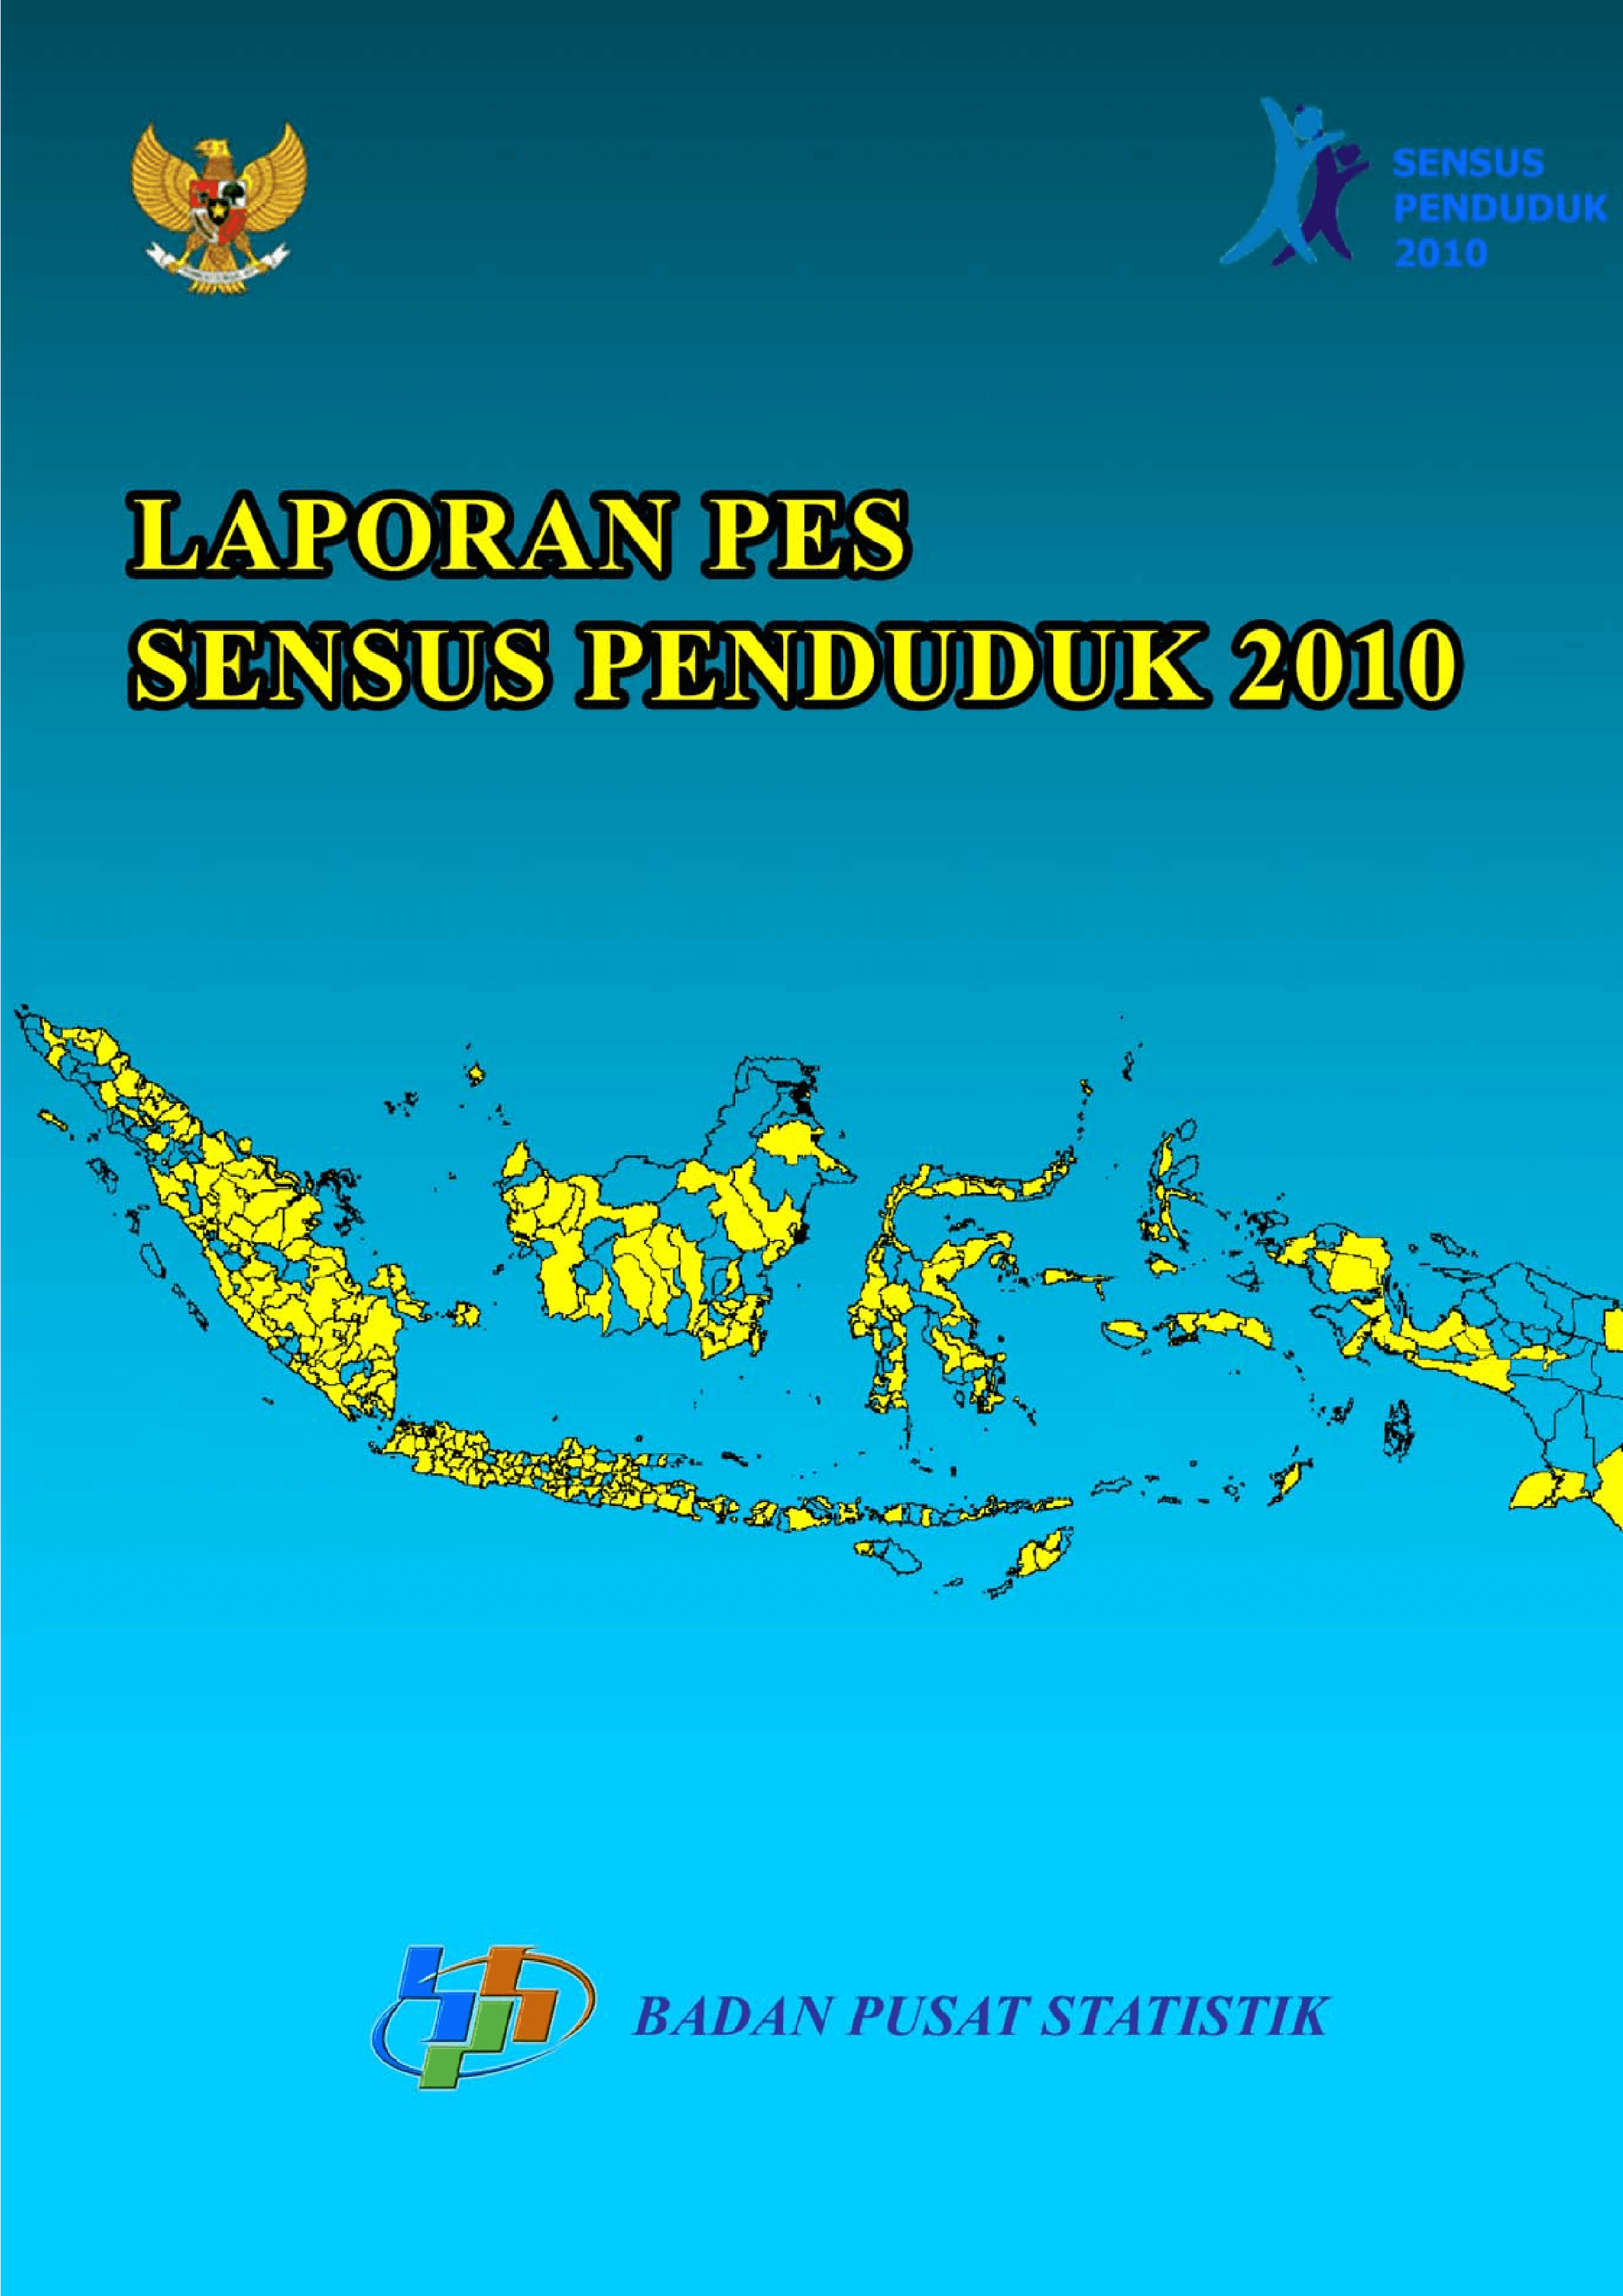 Population Census 2010 PES Report